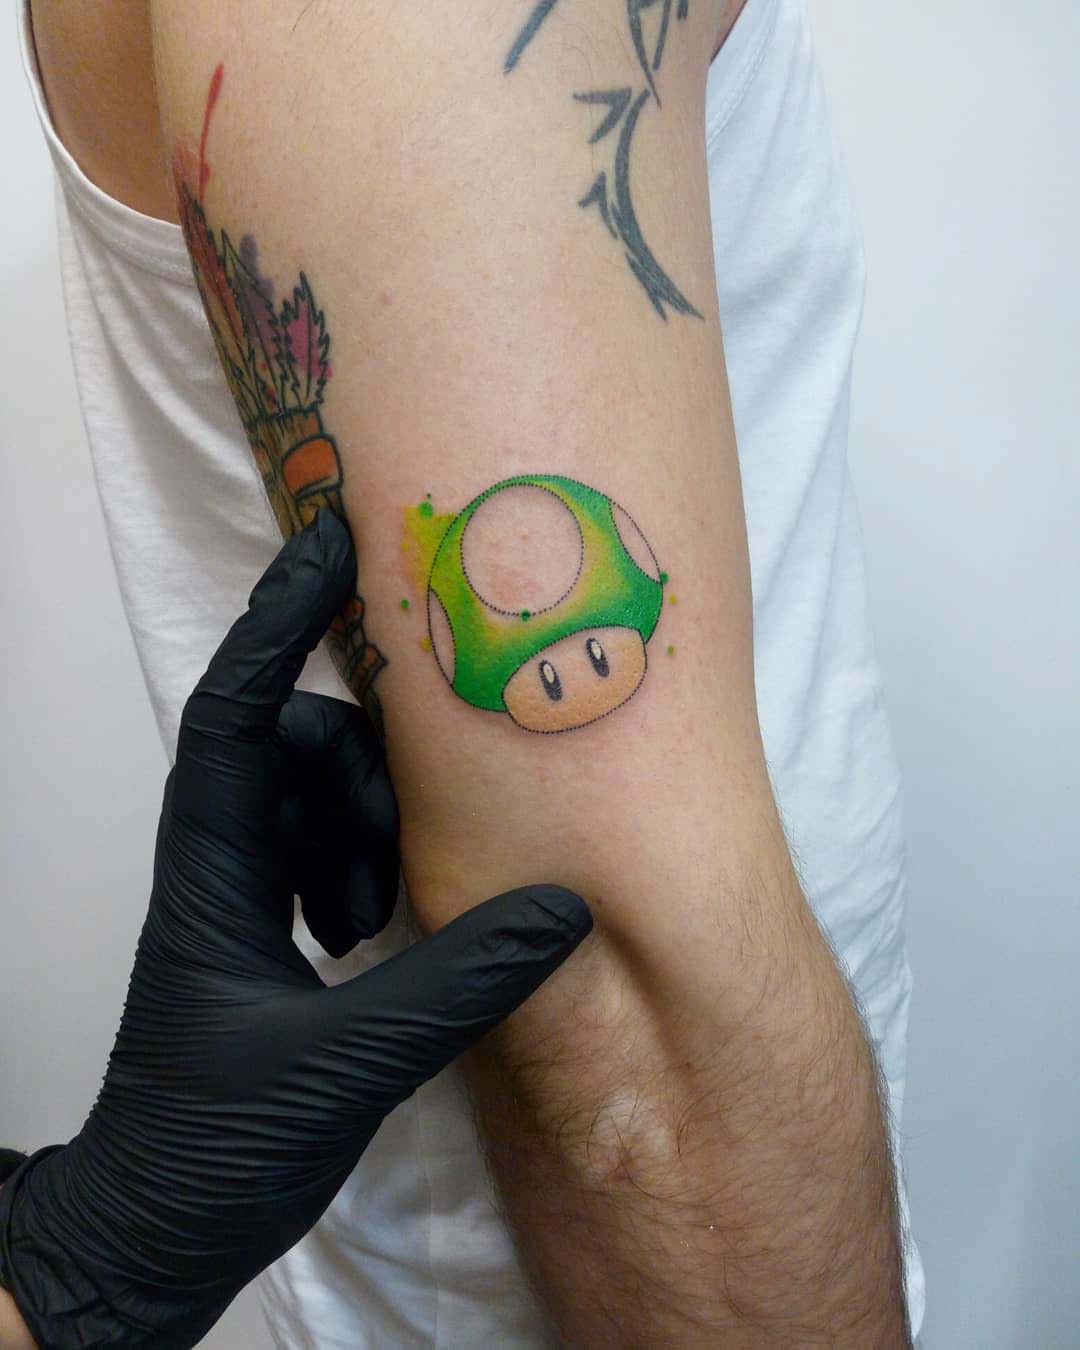 Mario Mushroom Tattoo